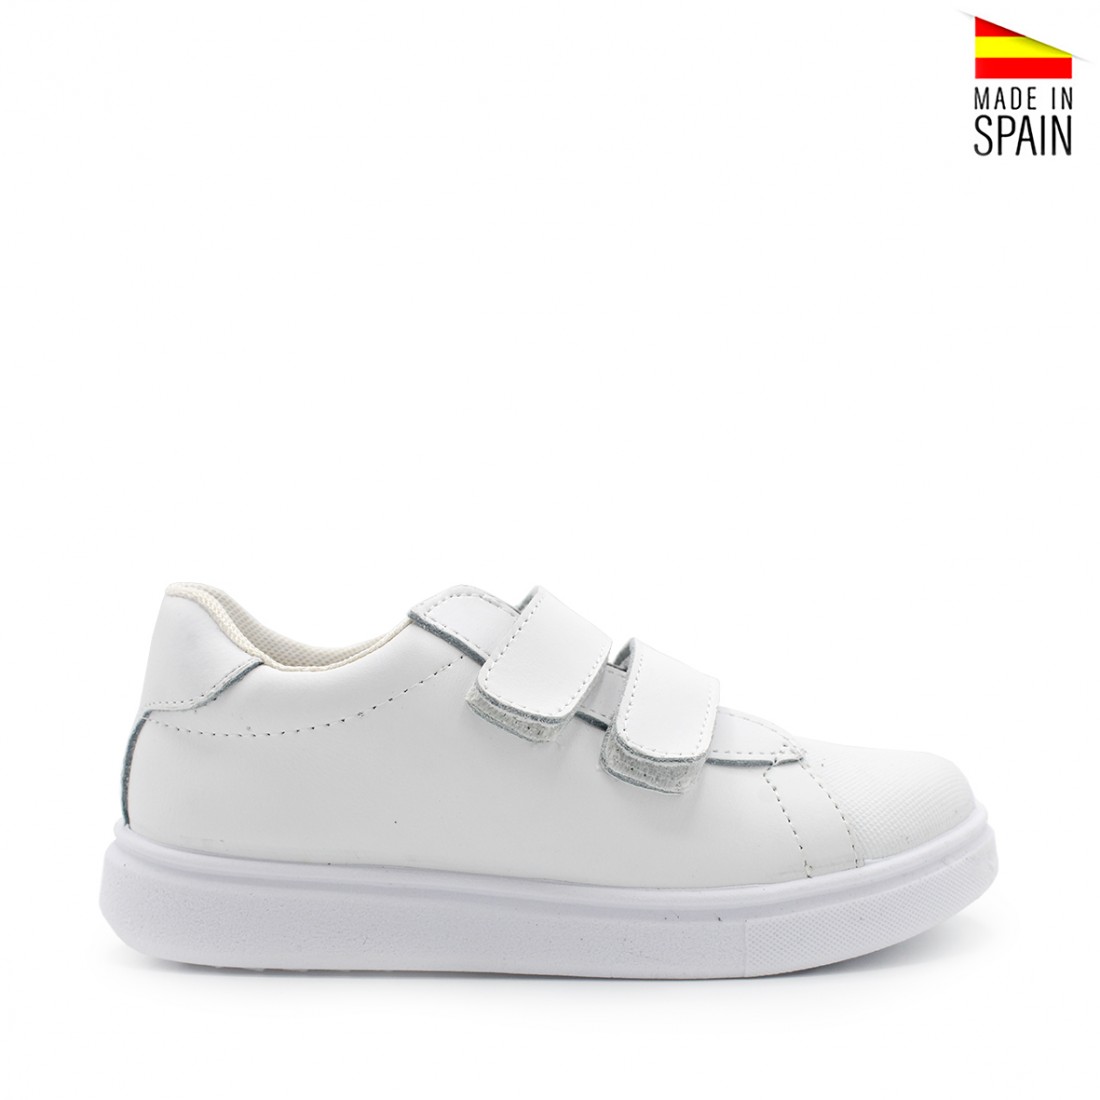 Zapatillas deportivas blancas de niños Talla de calzado 29 Color